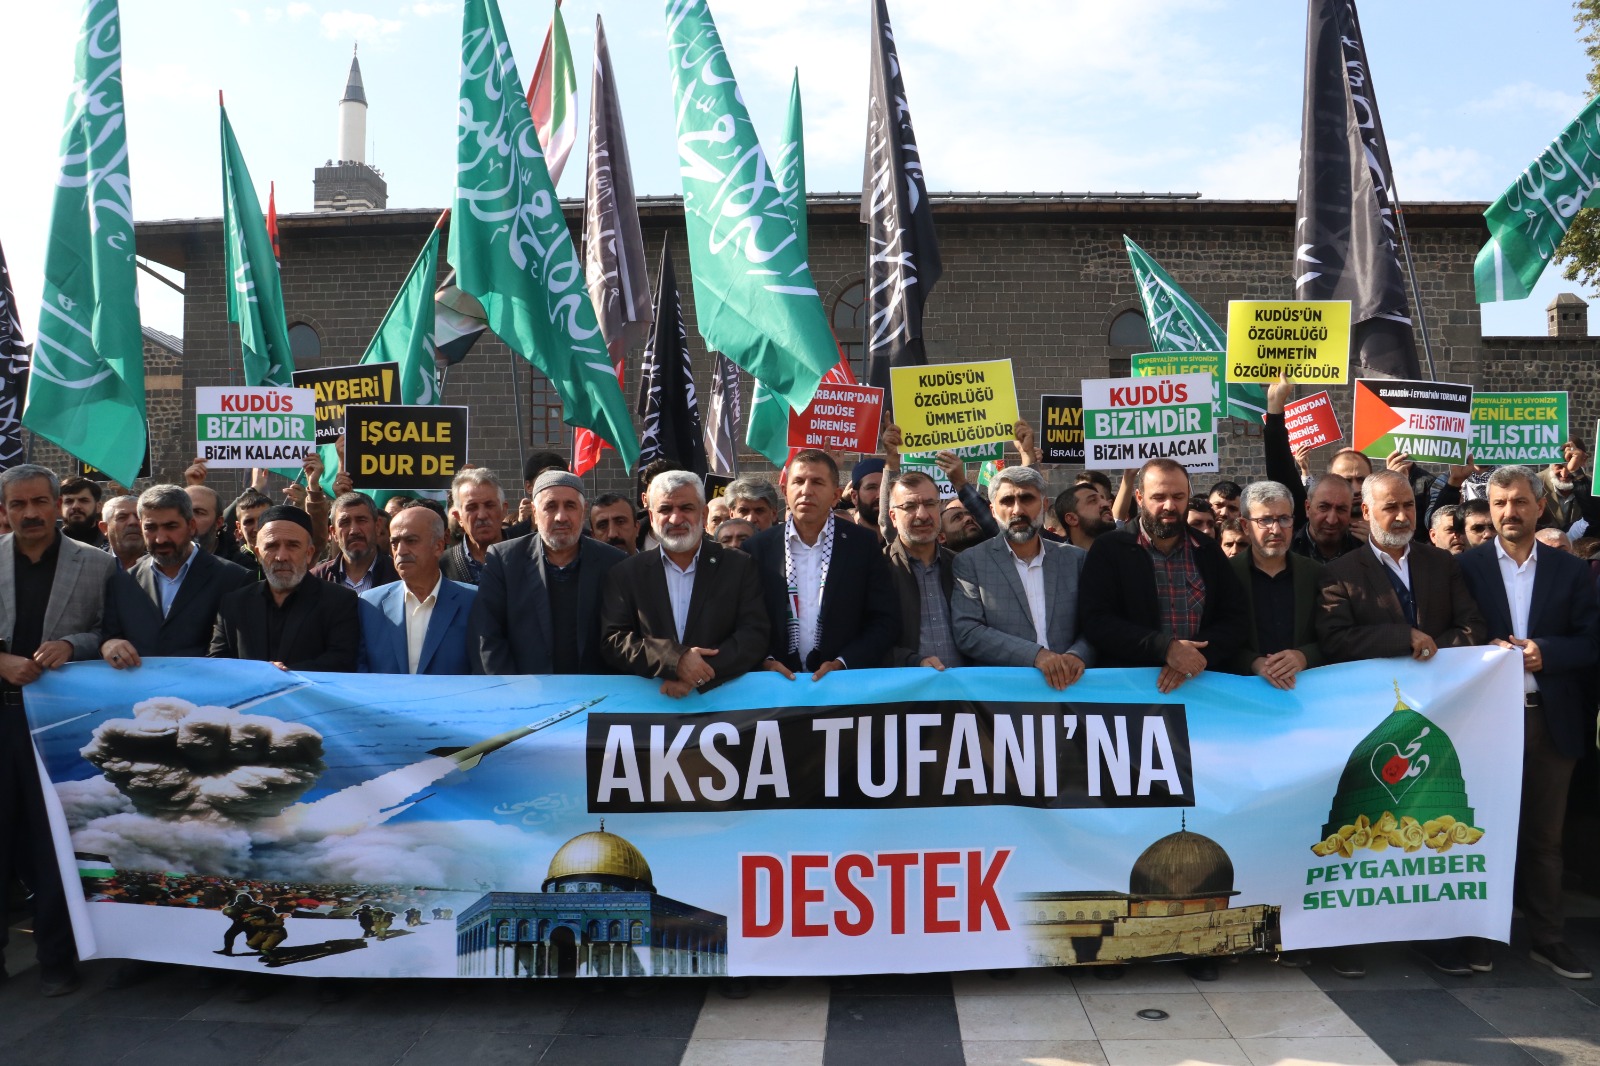 diyarbakirda-cuma-namazi-cikisi-israil-protestosu-yenicag2.jpg